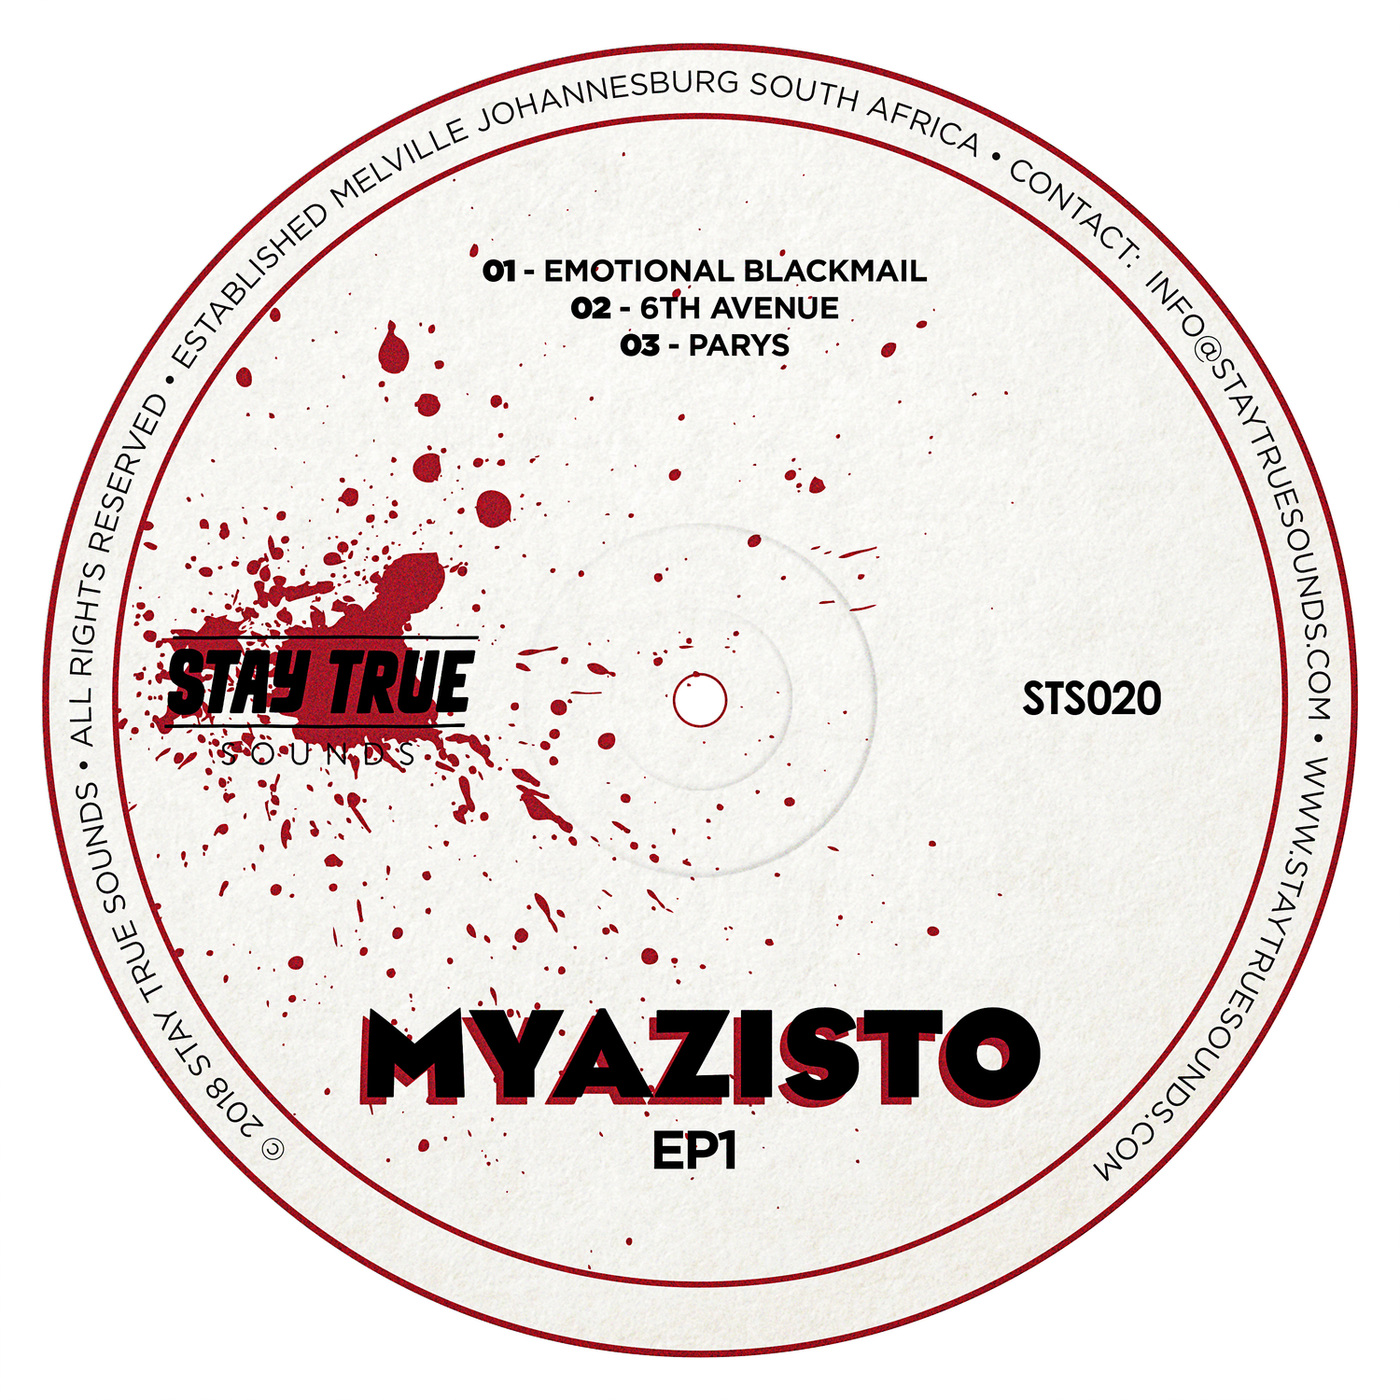 Myazisto - Ep1 / Stay True Sounds